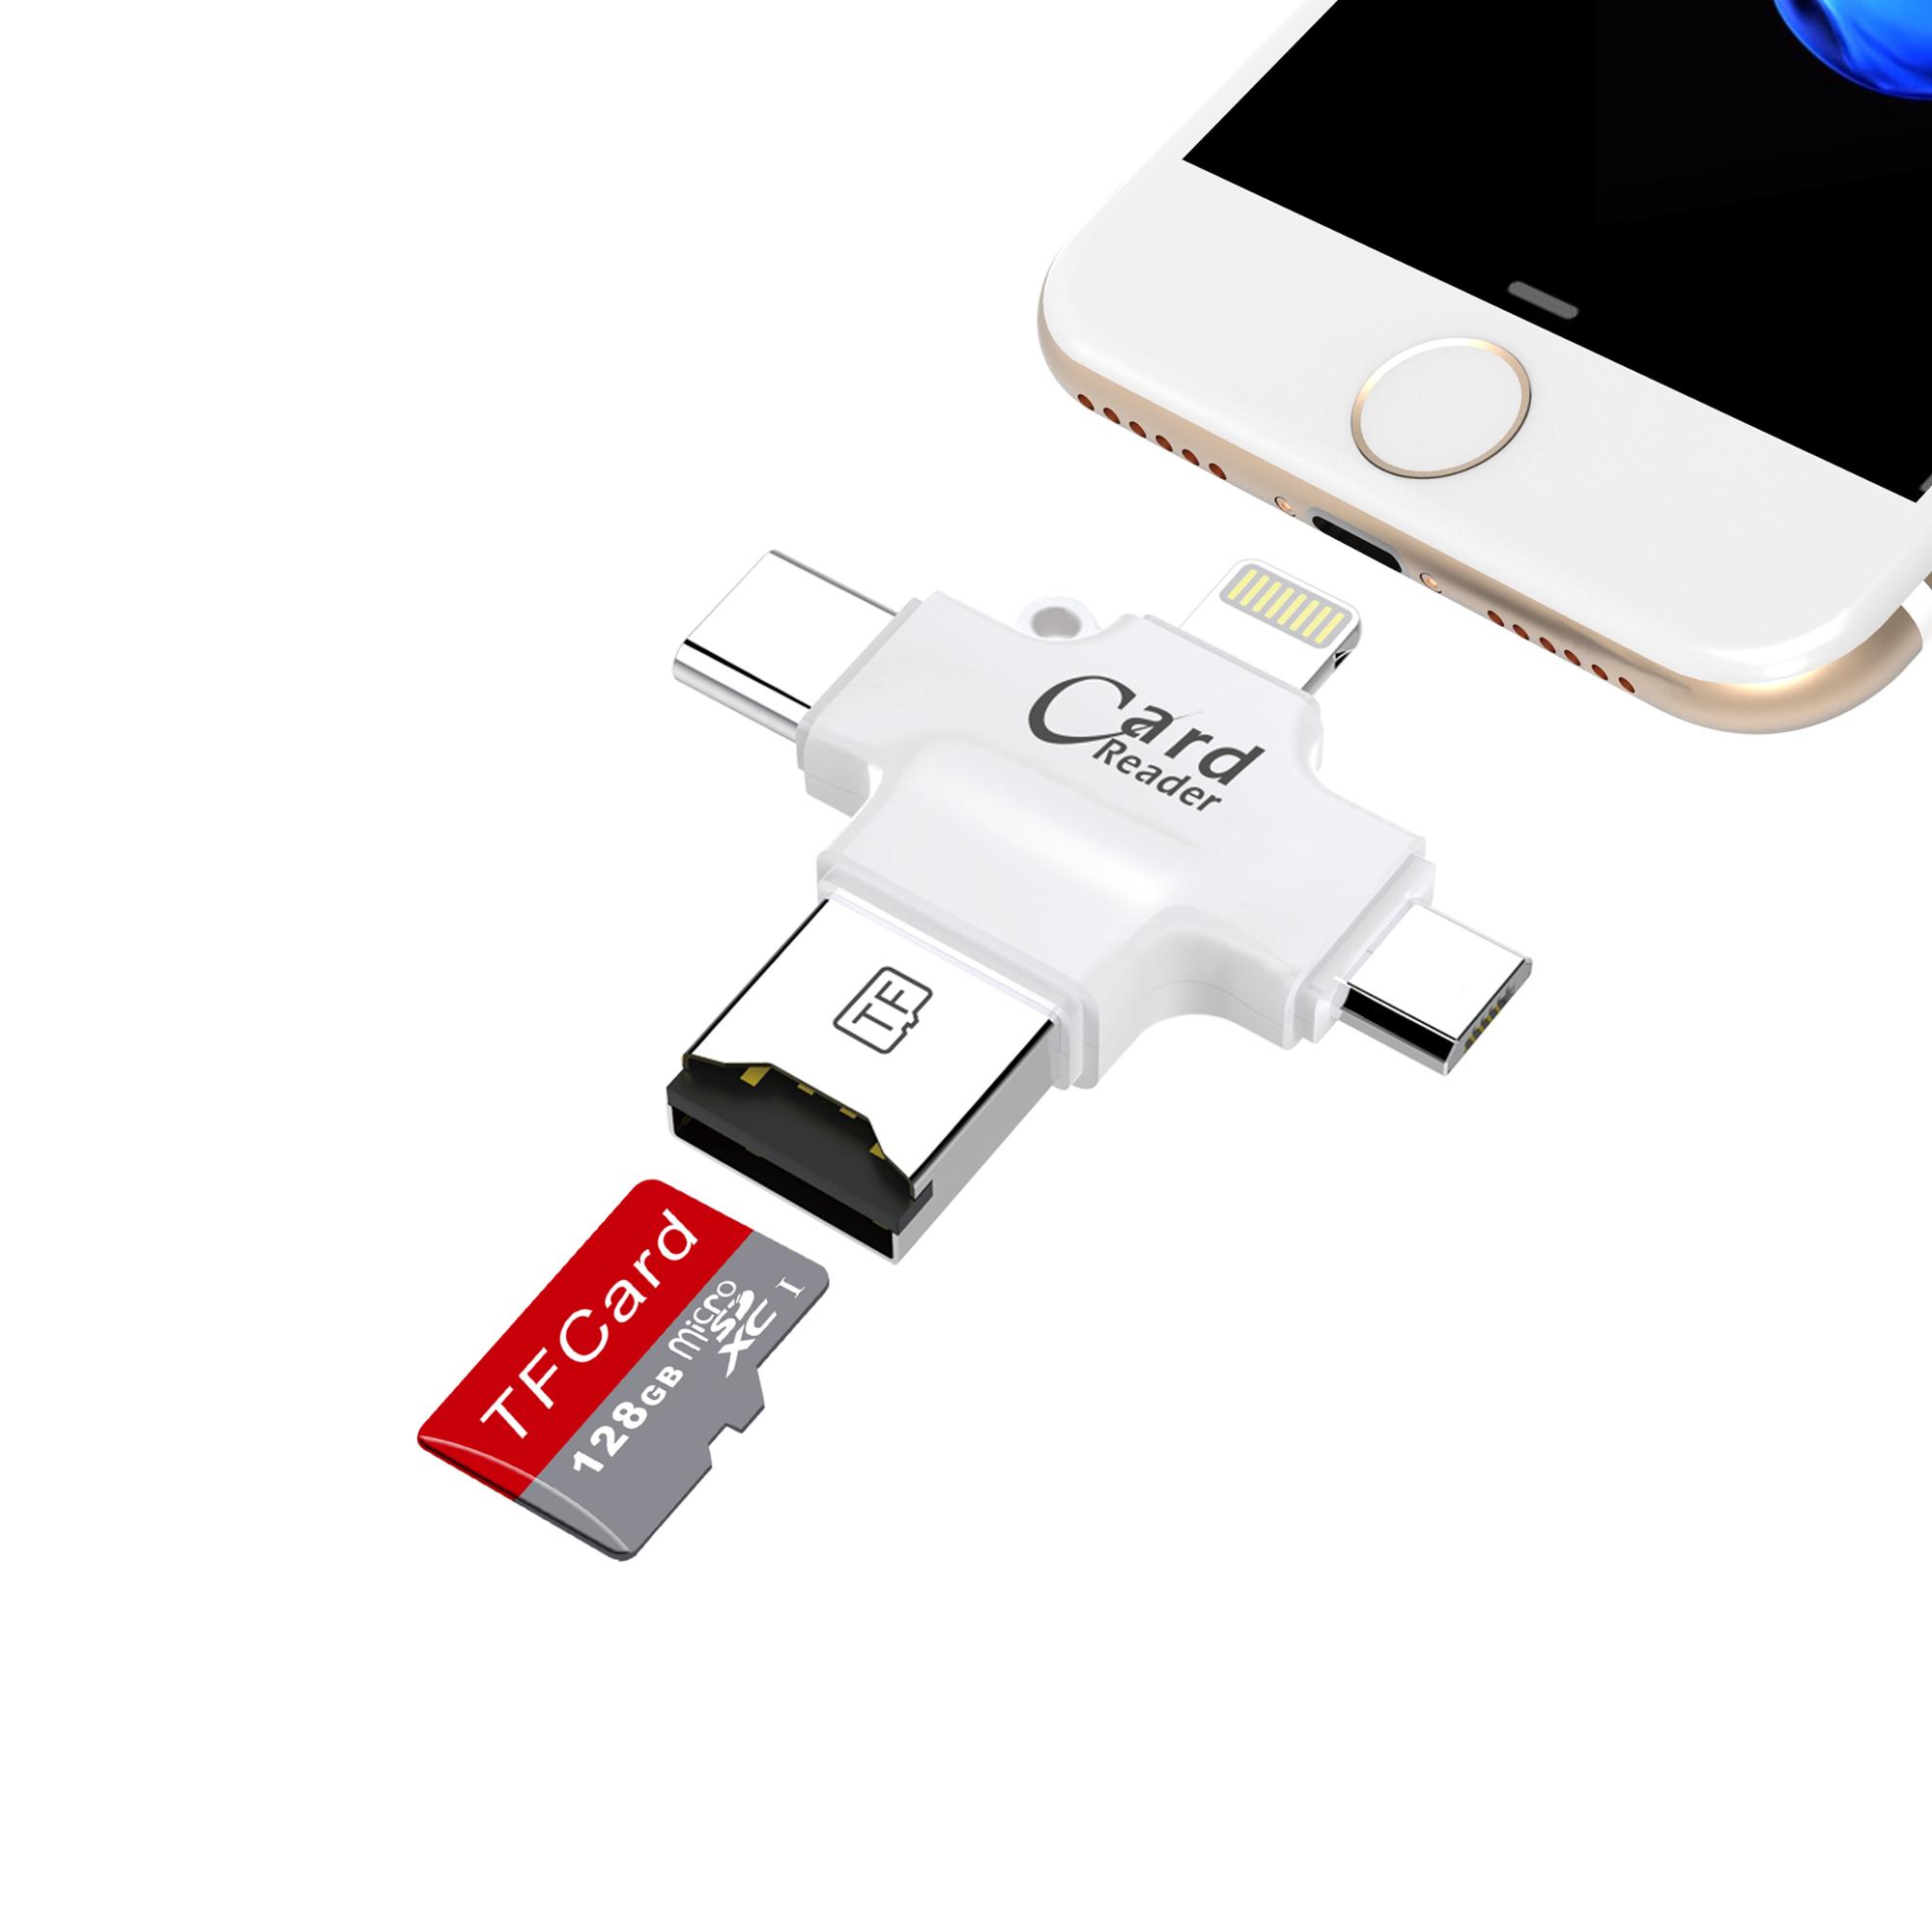 iDragon Lightning Card Reader /кабель+USB/карта памяти/поддержка FAT32/TF/ iOS и Android/ белый.